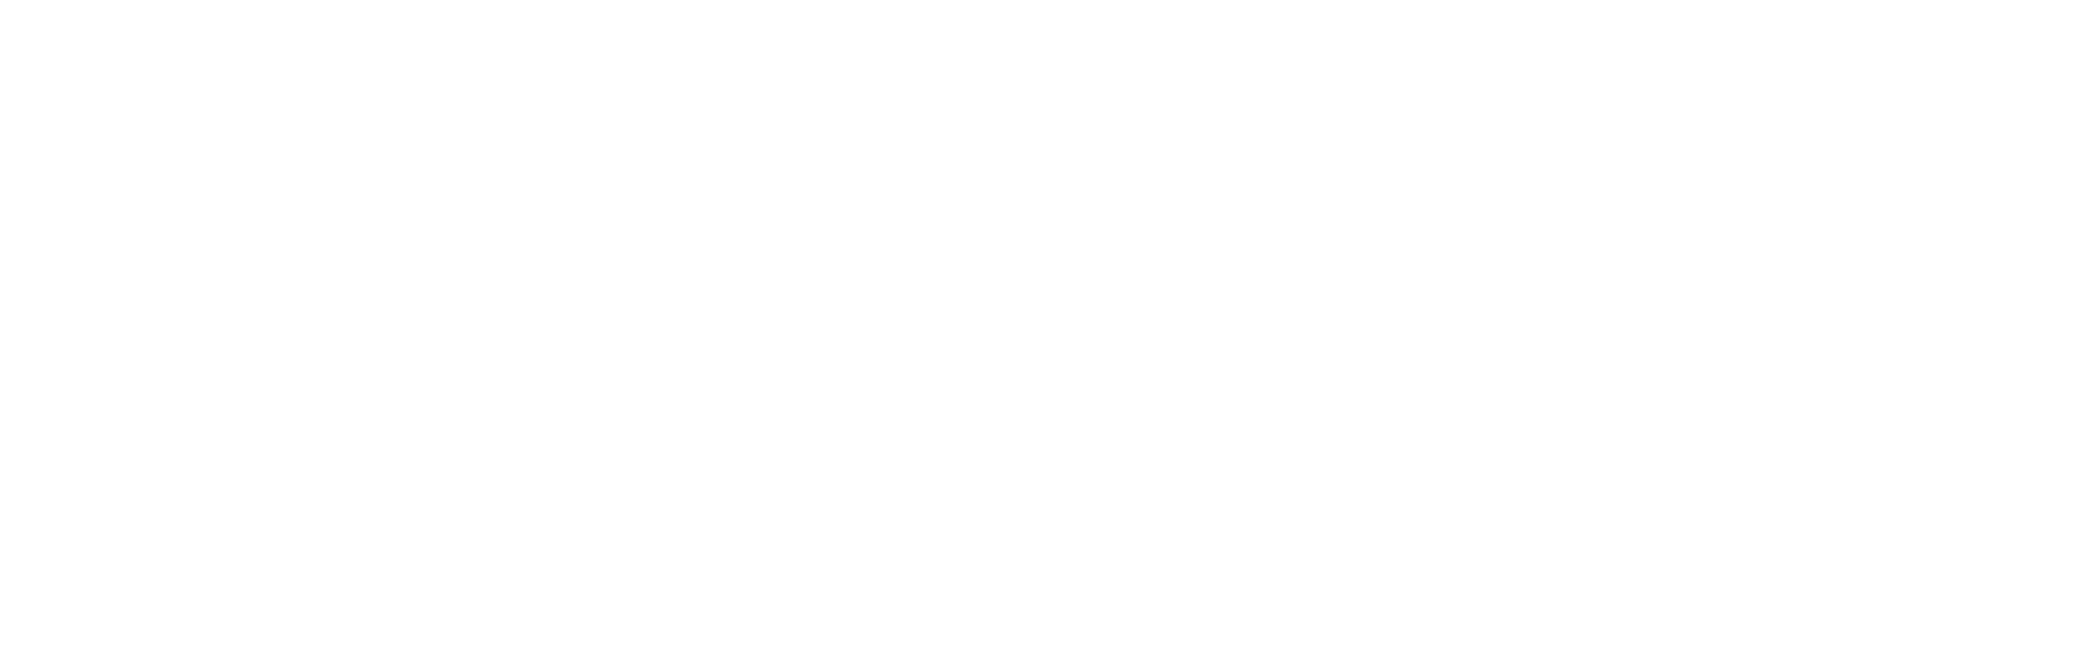 Teresa's Trip logo